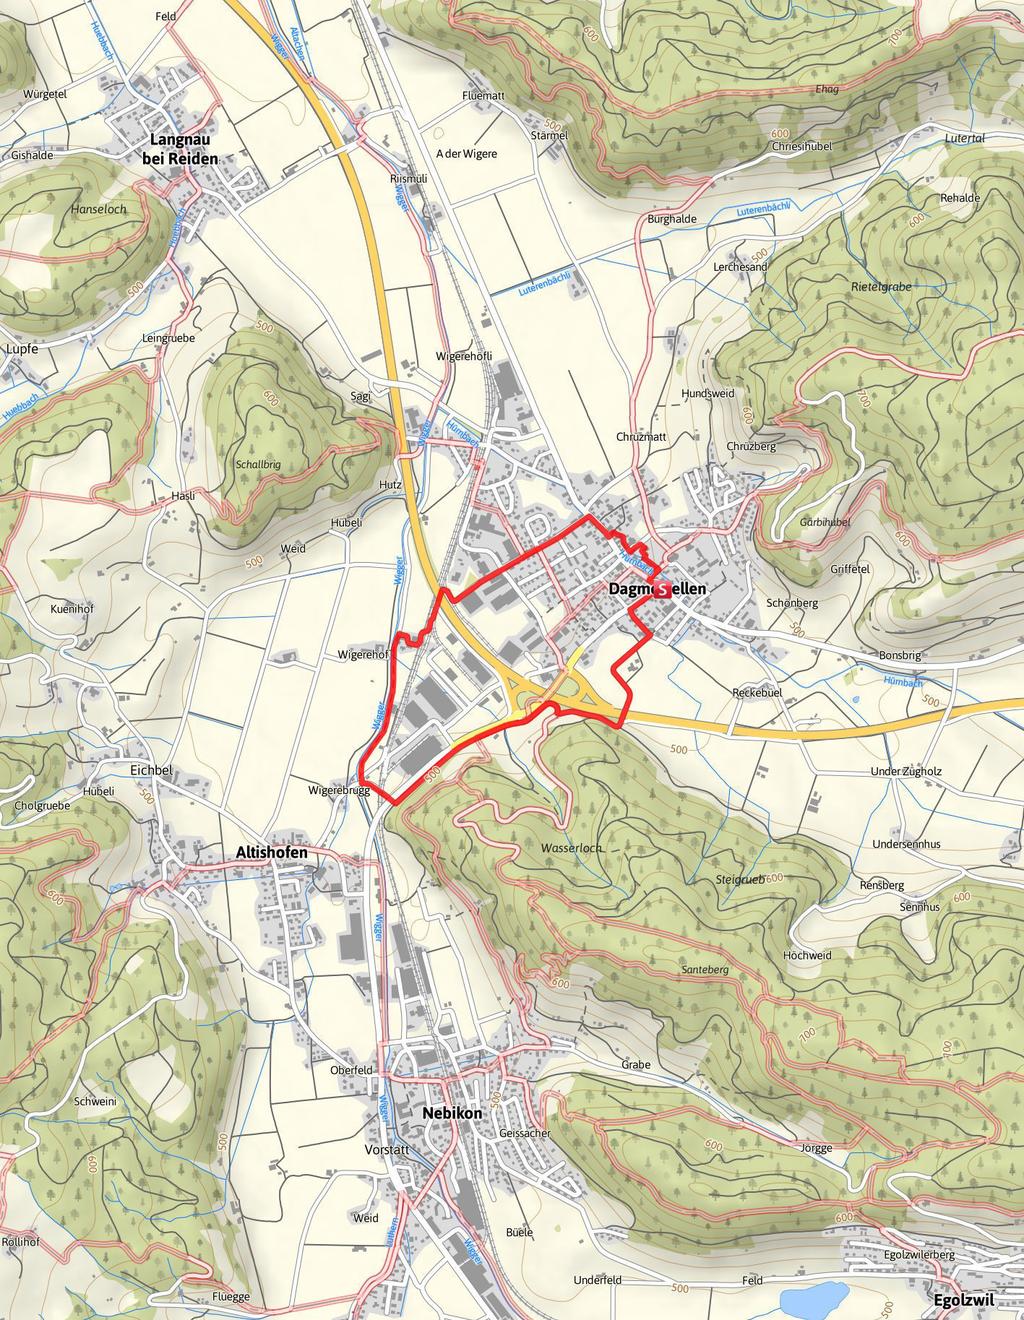 4,7km 1:15Std 50m 50m Kartengrundlagen: outdooractive Kartografie; Deutschland: GeoBasis-DE / BKG 2017, GeoBasis-DE / GEObasis.nrw 2011, Österreich: 1996-2017 here. All rights reserved.